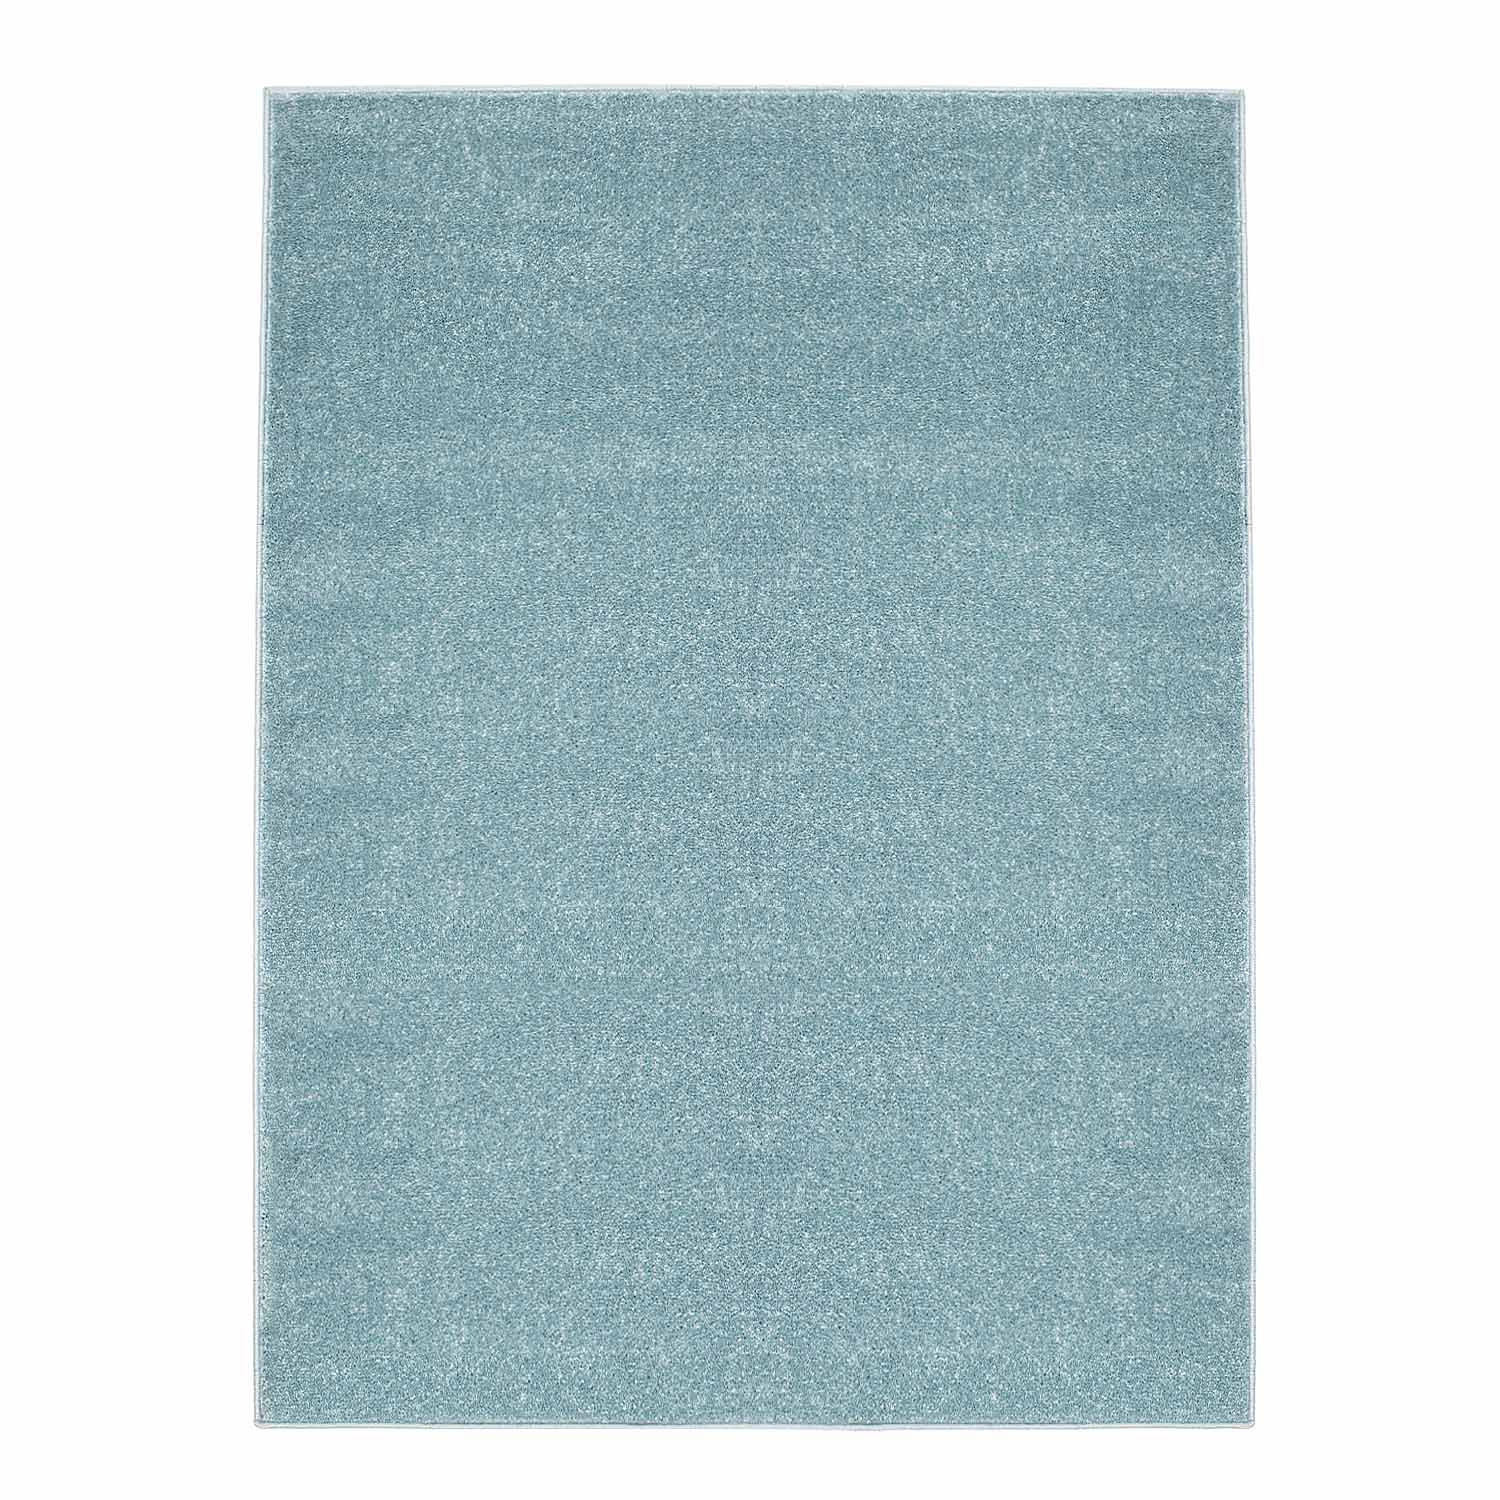 Wilton rug - Moda (blue)